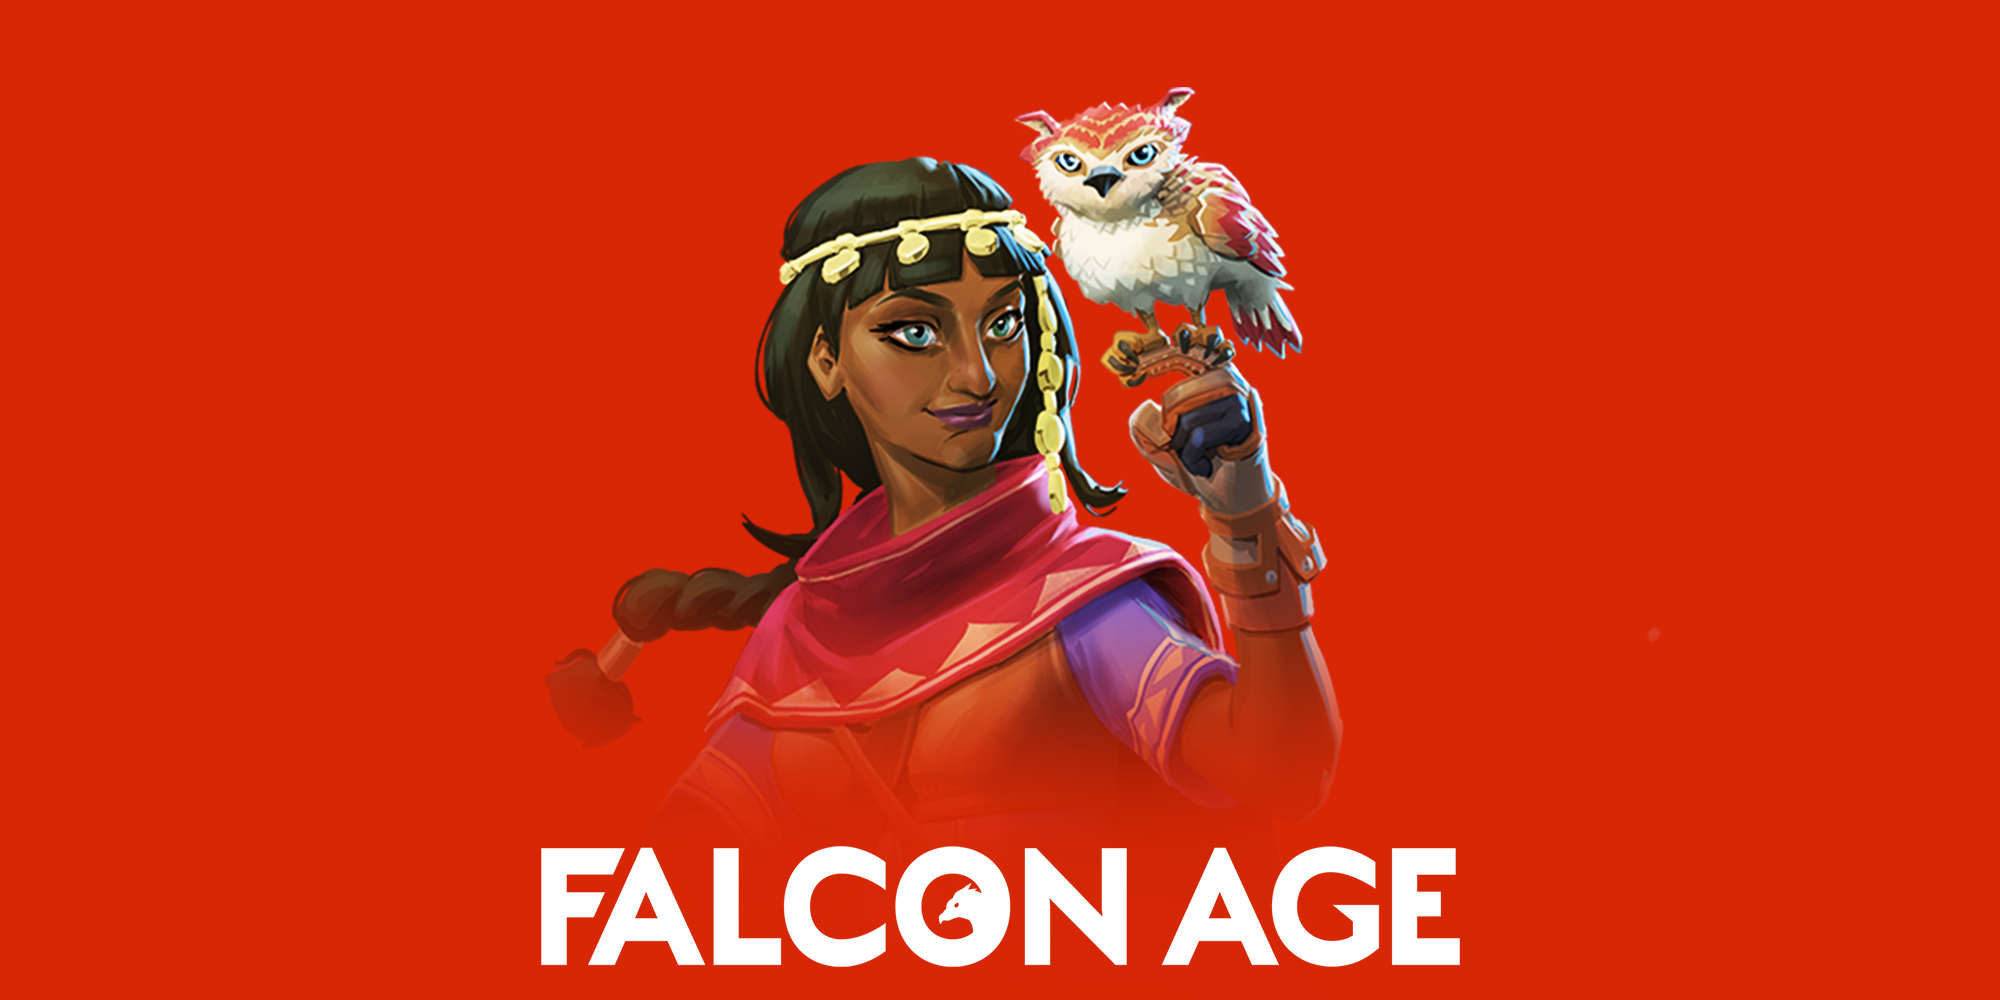 Falcon age Вики. Falcon age. Ultra age Nintendo Switch. Broken age Nintendo Switch. Nintendo age